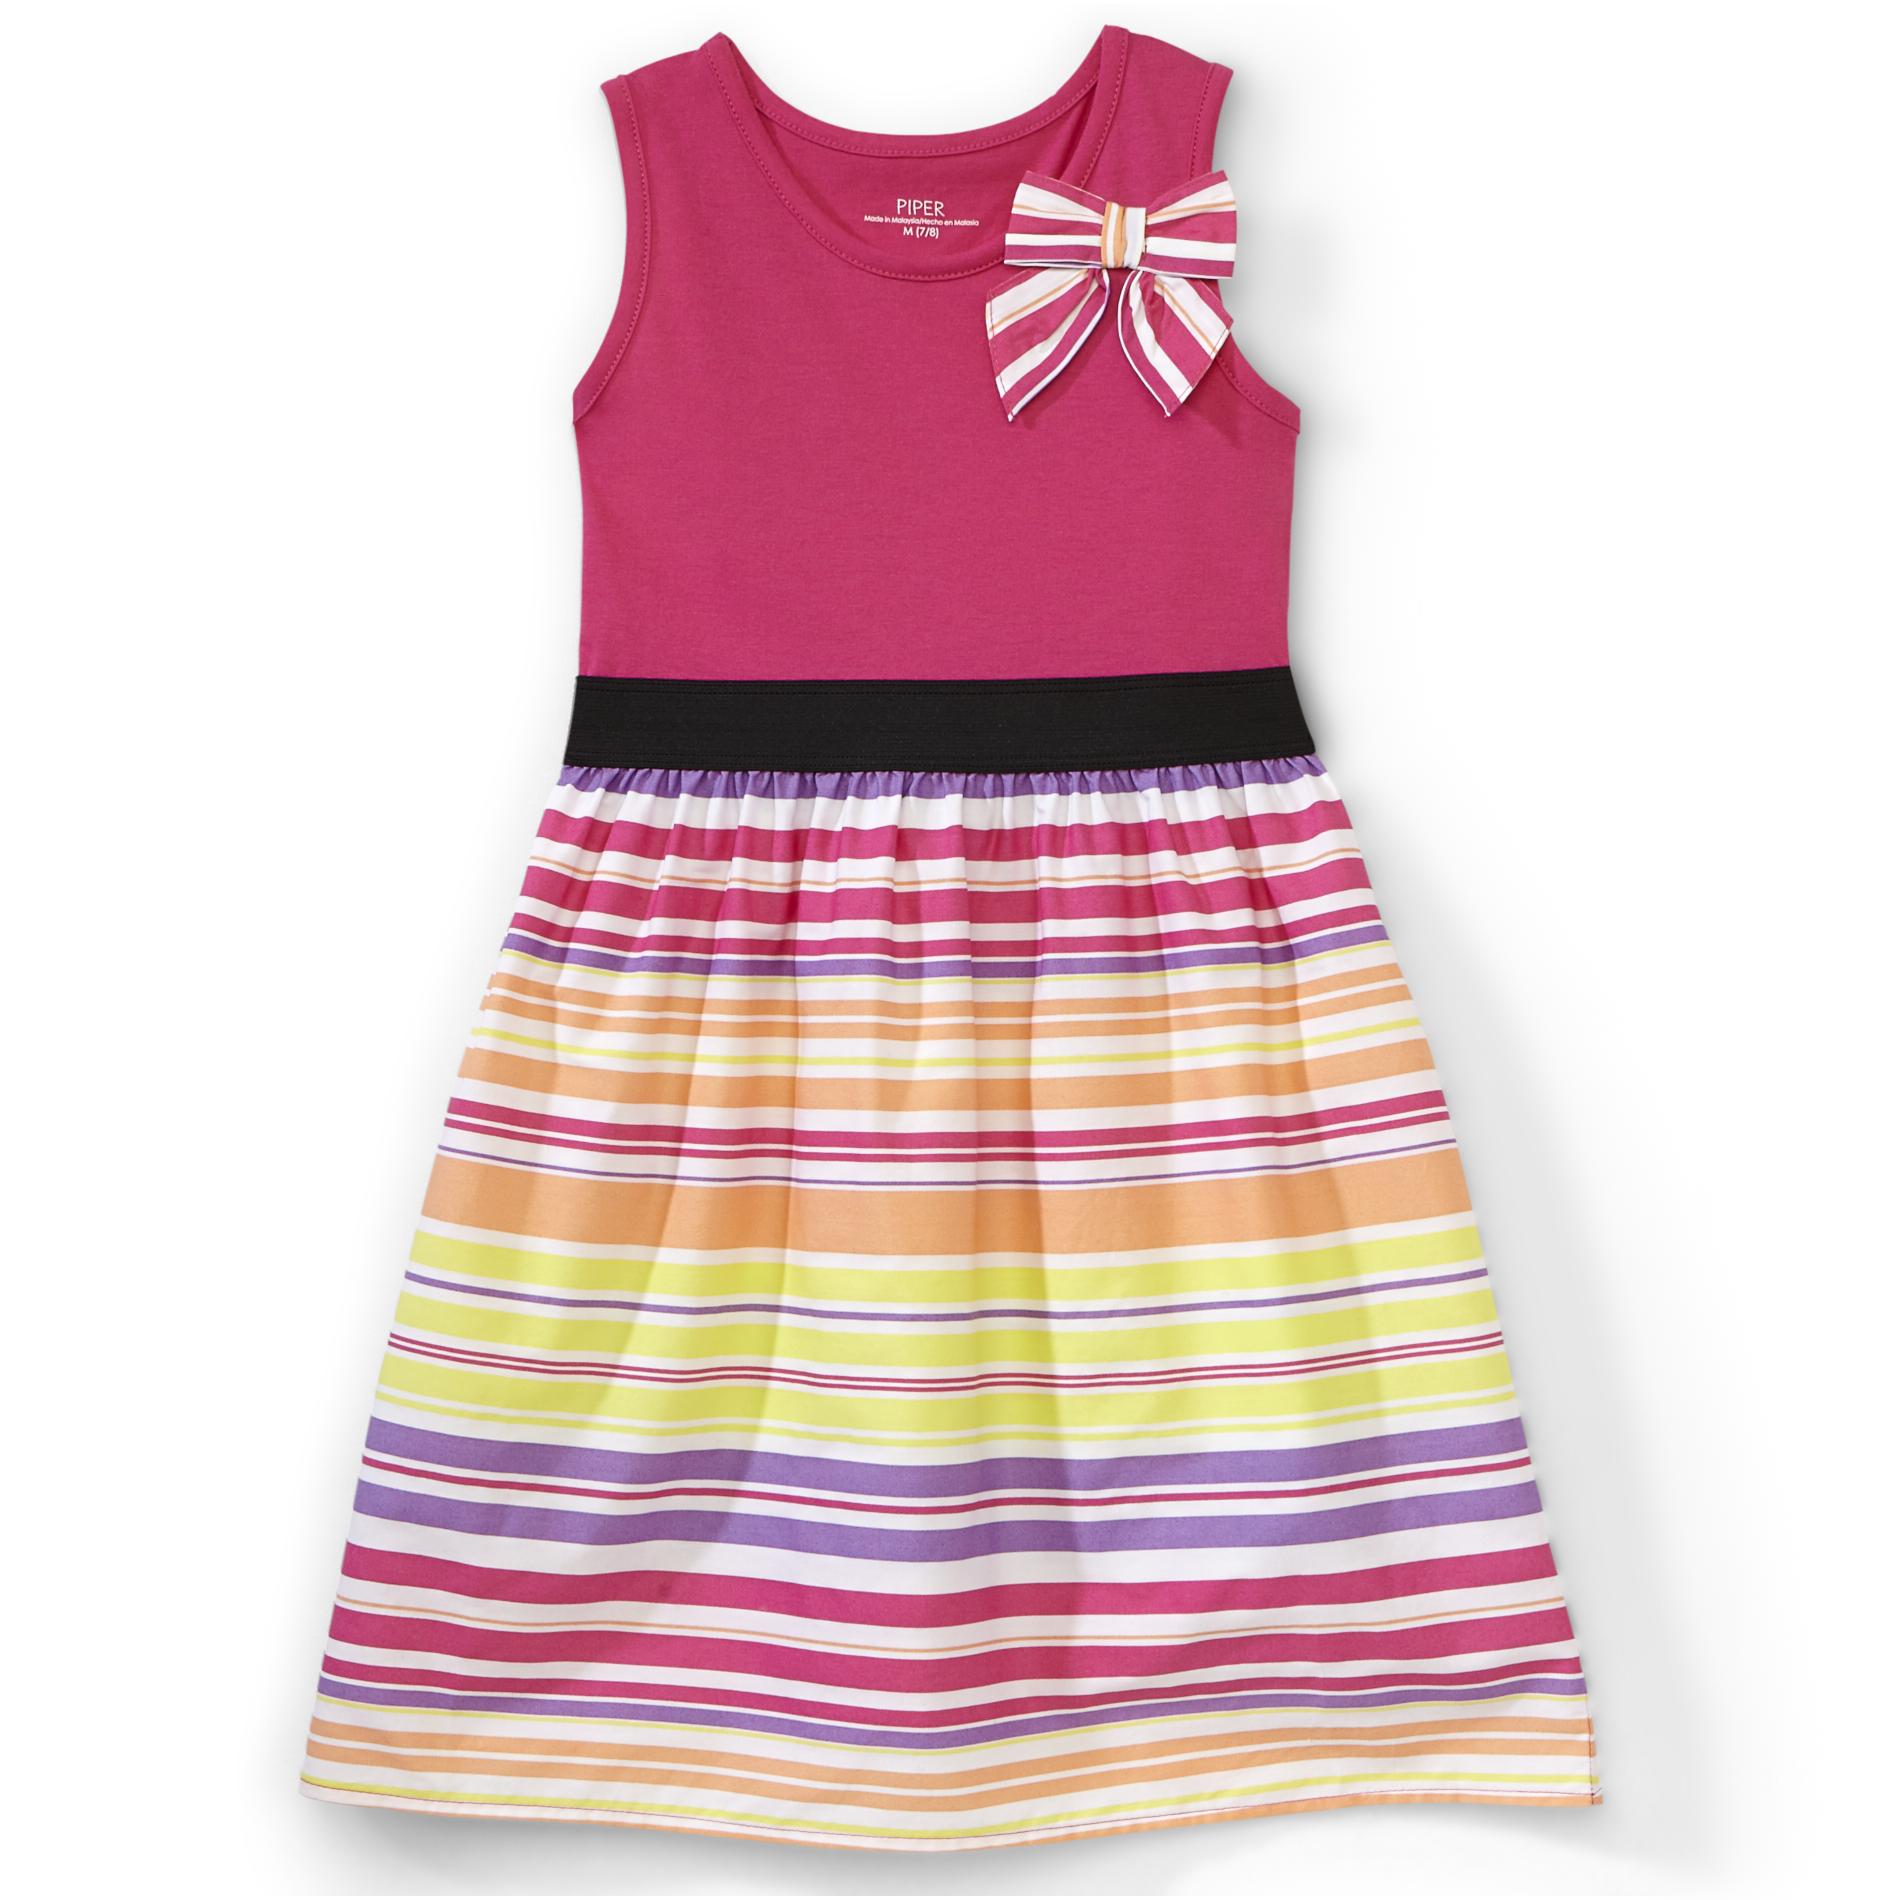 Piper Girl's Sleeveless Dress - Stripe